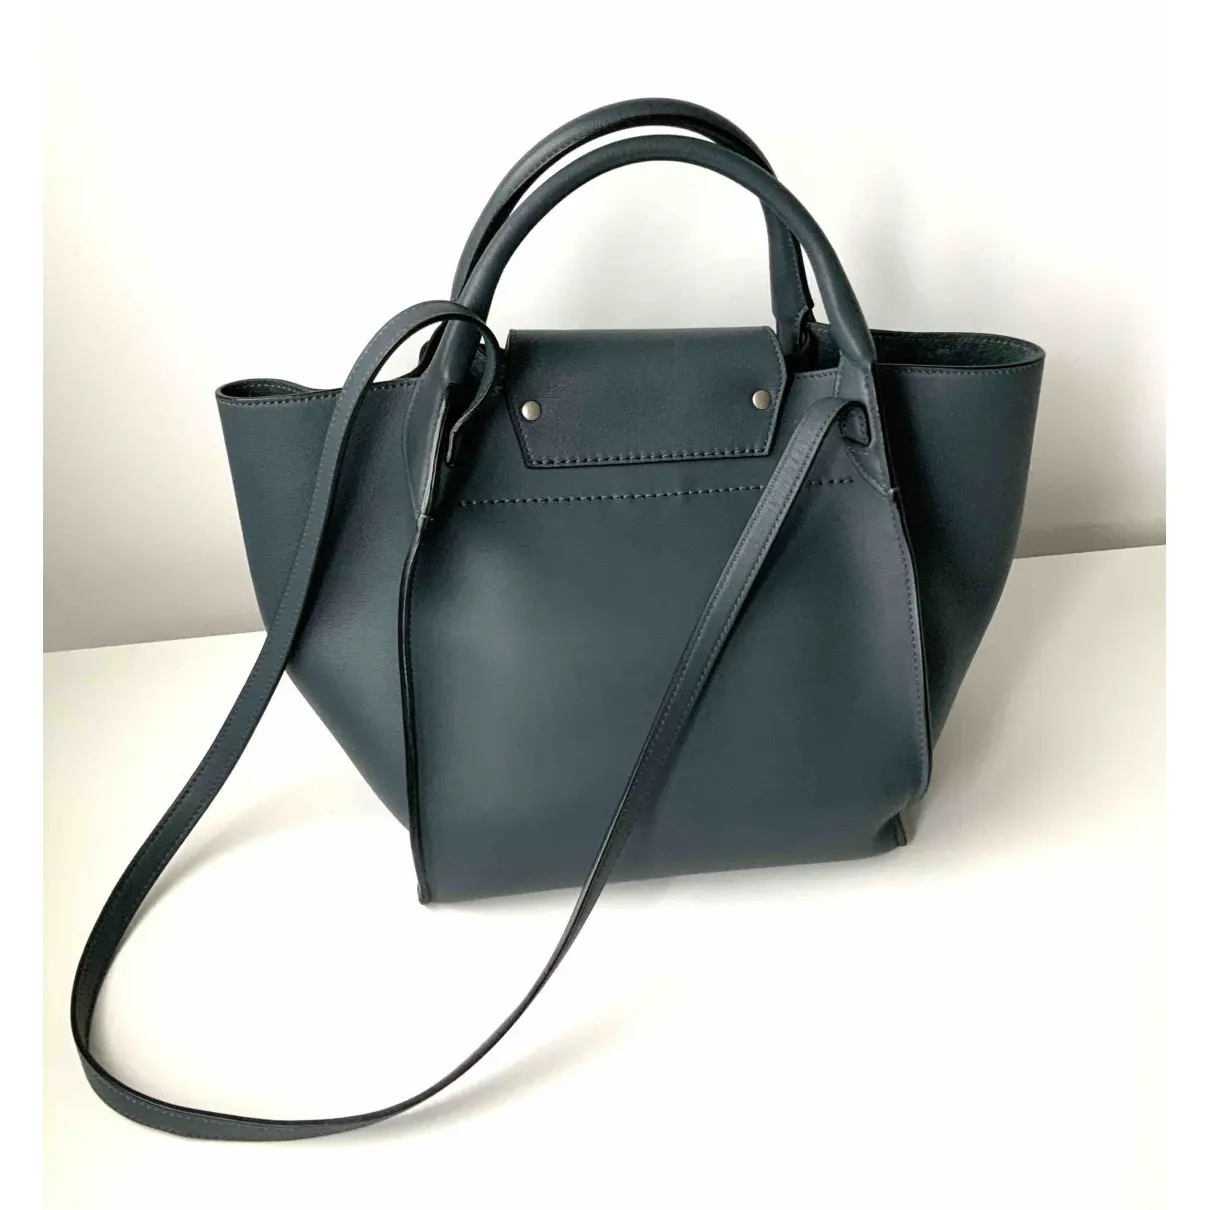 Buy Celine Big Bag leather handbag online